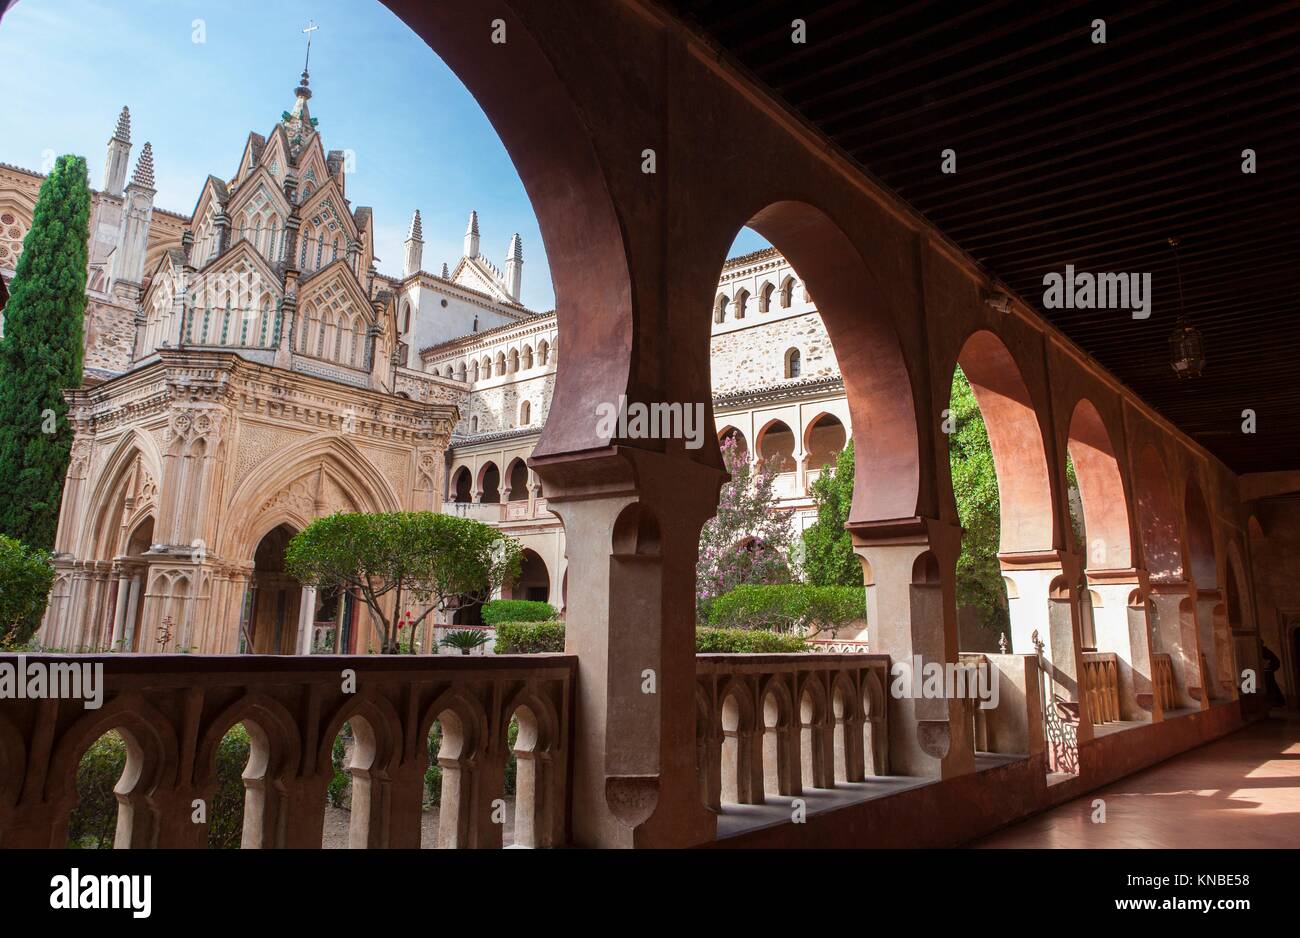 Edificio central del Monasterio de Guadalupe claustro de arcade abierto. Cáceres, Extremadura, España. Foto de stock